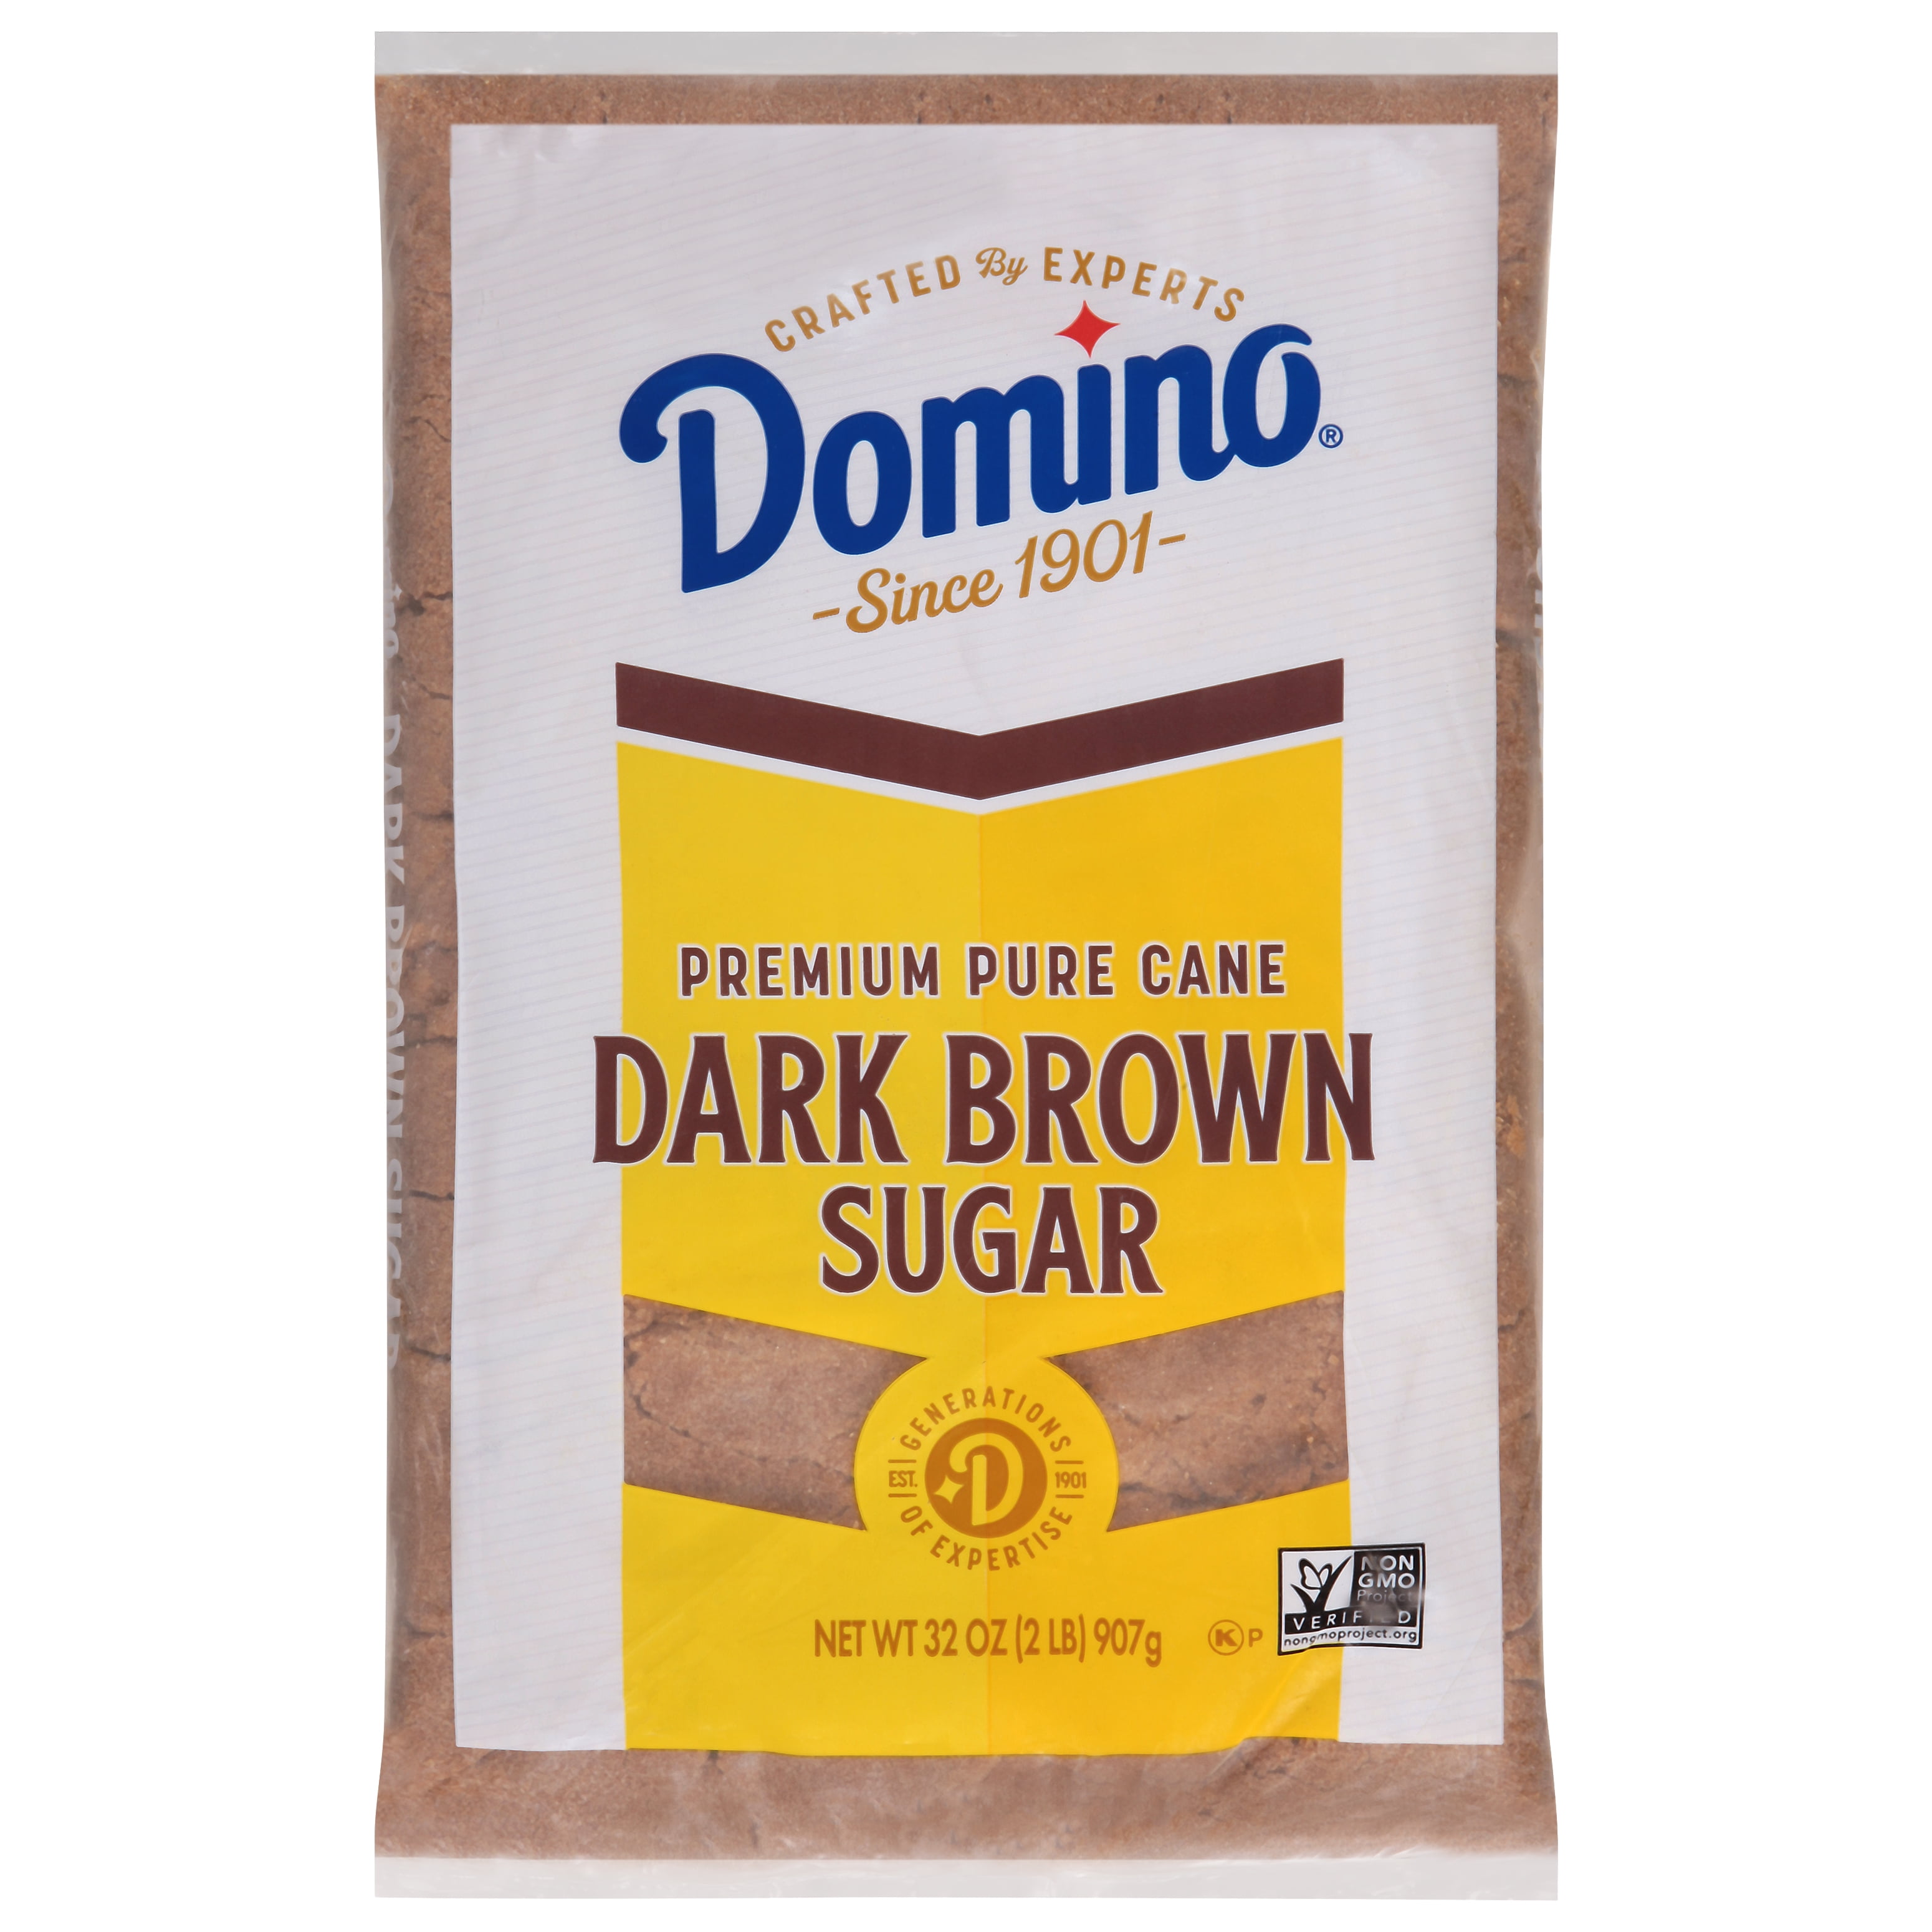 Domino Premium Pure Cane Dark Brown Sugar, 2 lb